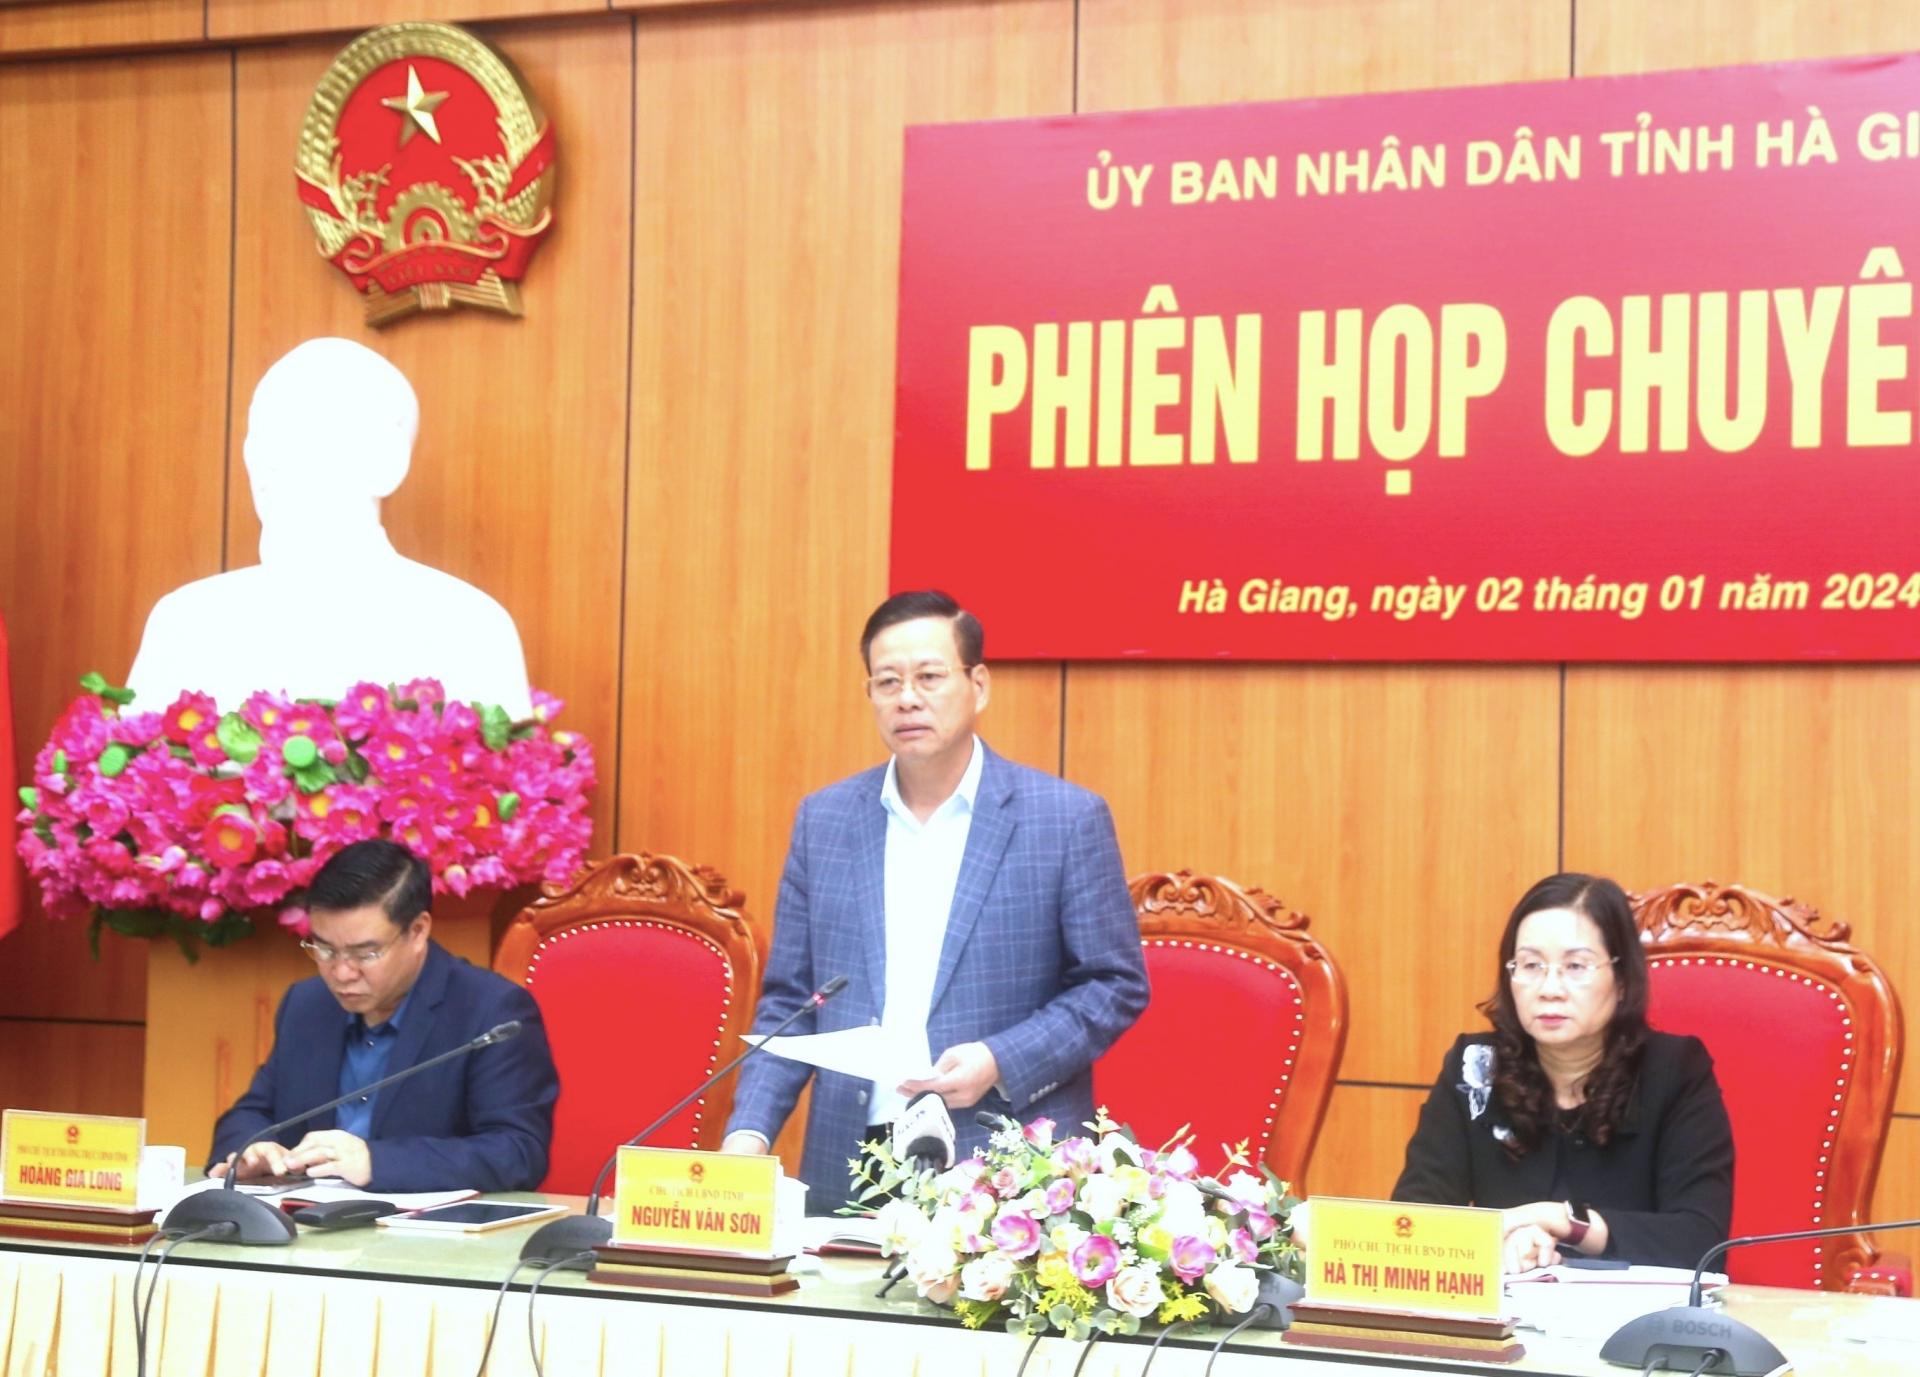 Chủ tịch UBND tỉnh Nguyễn Văn Sơn phát biểu tại phiên họp chuyên đề UBND tỉnh.